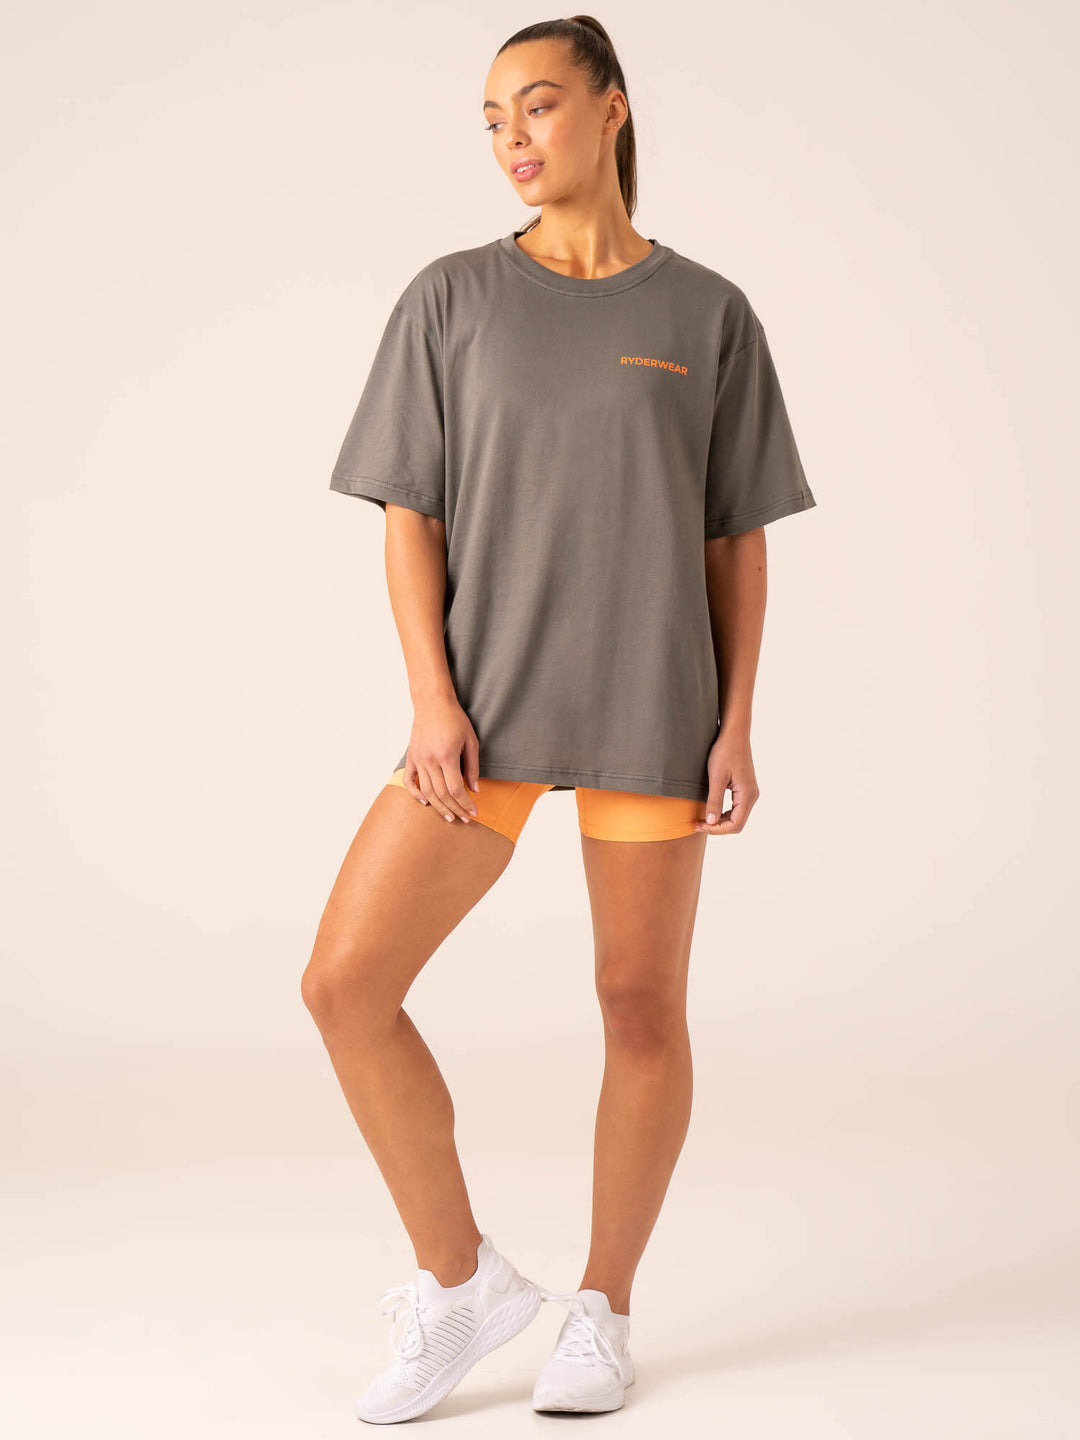 Pro Seamless T-Shirt - Charcoal